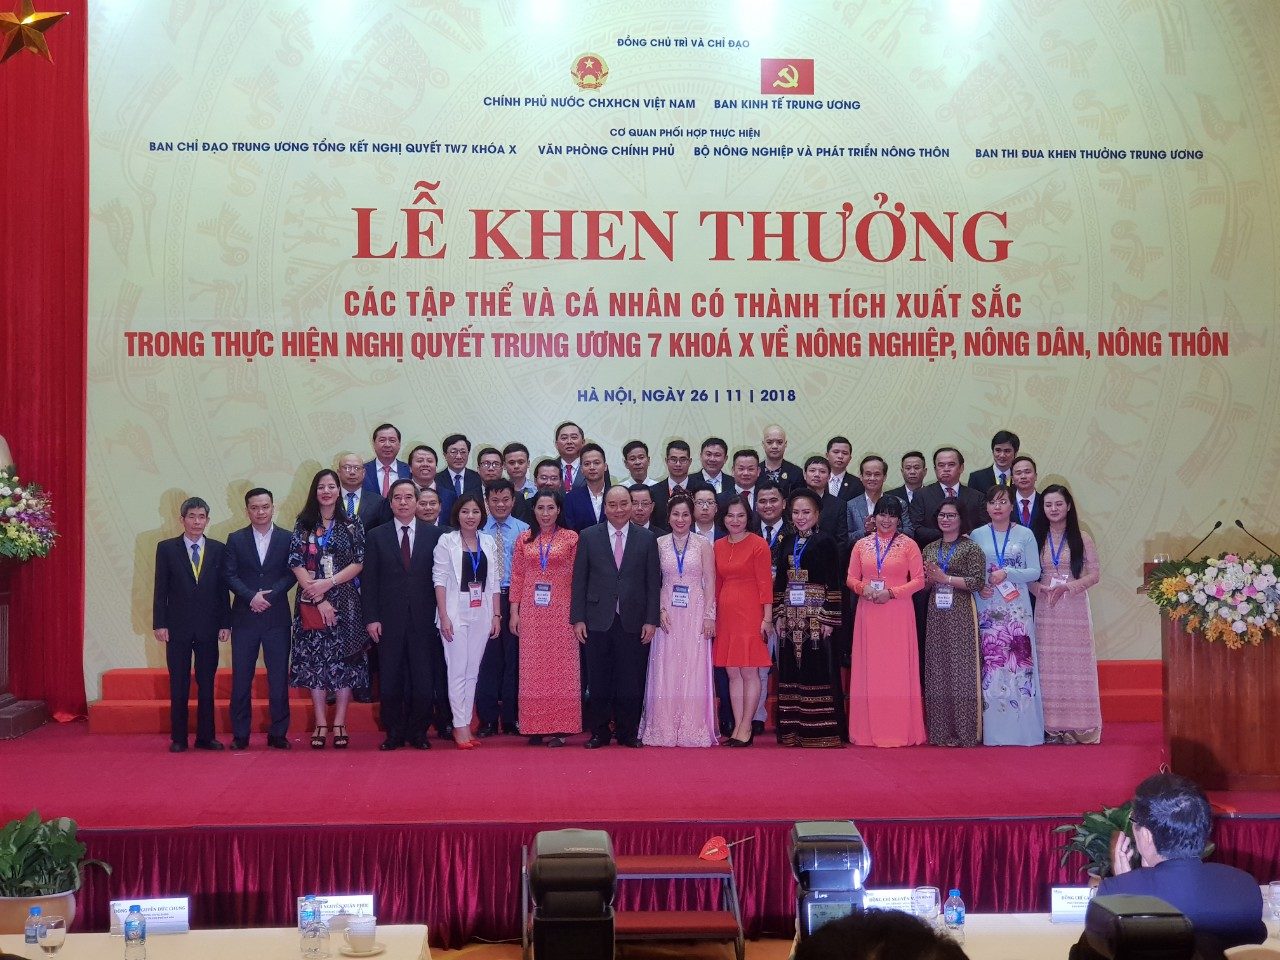 NextCRM – NextFarm vinh dự được Thủ tướng Chính phủ Nguyễn Xuân Phúc khen thưởng những Tổ chức Doanh nghiệp có thành tích đóng góp xuất sắc năm 2018 